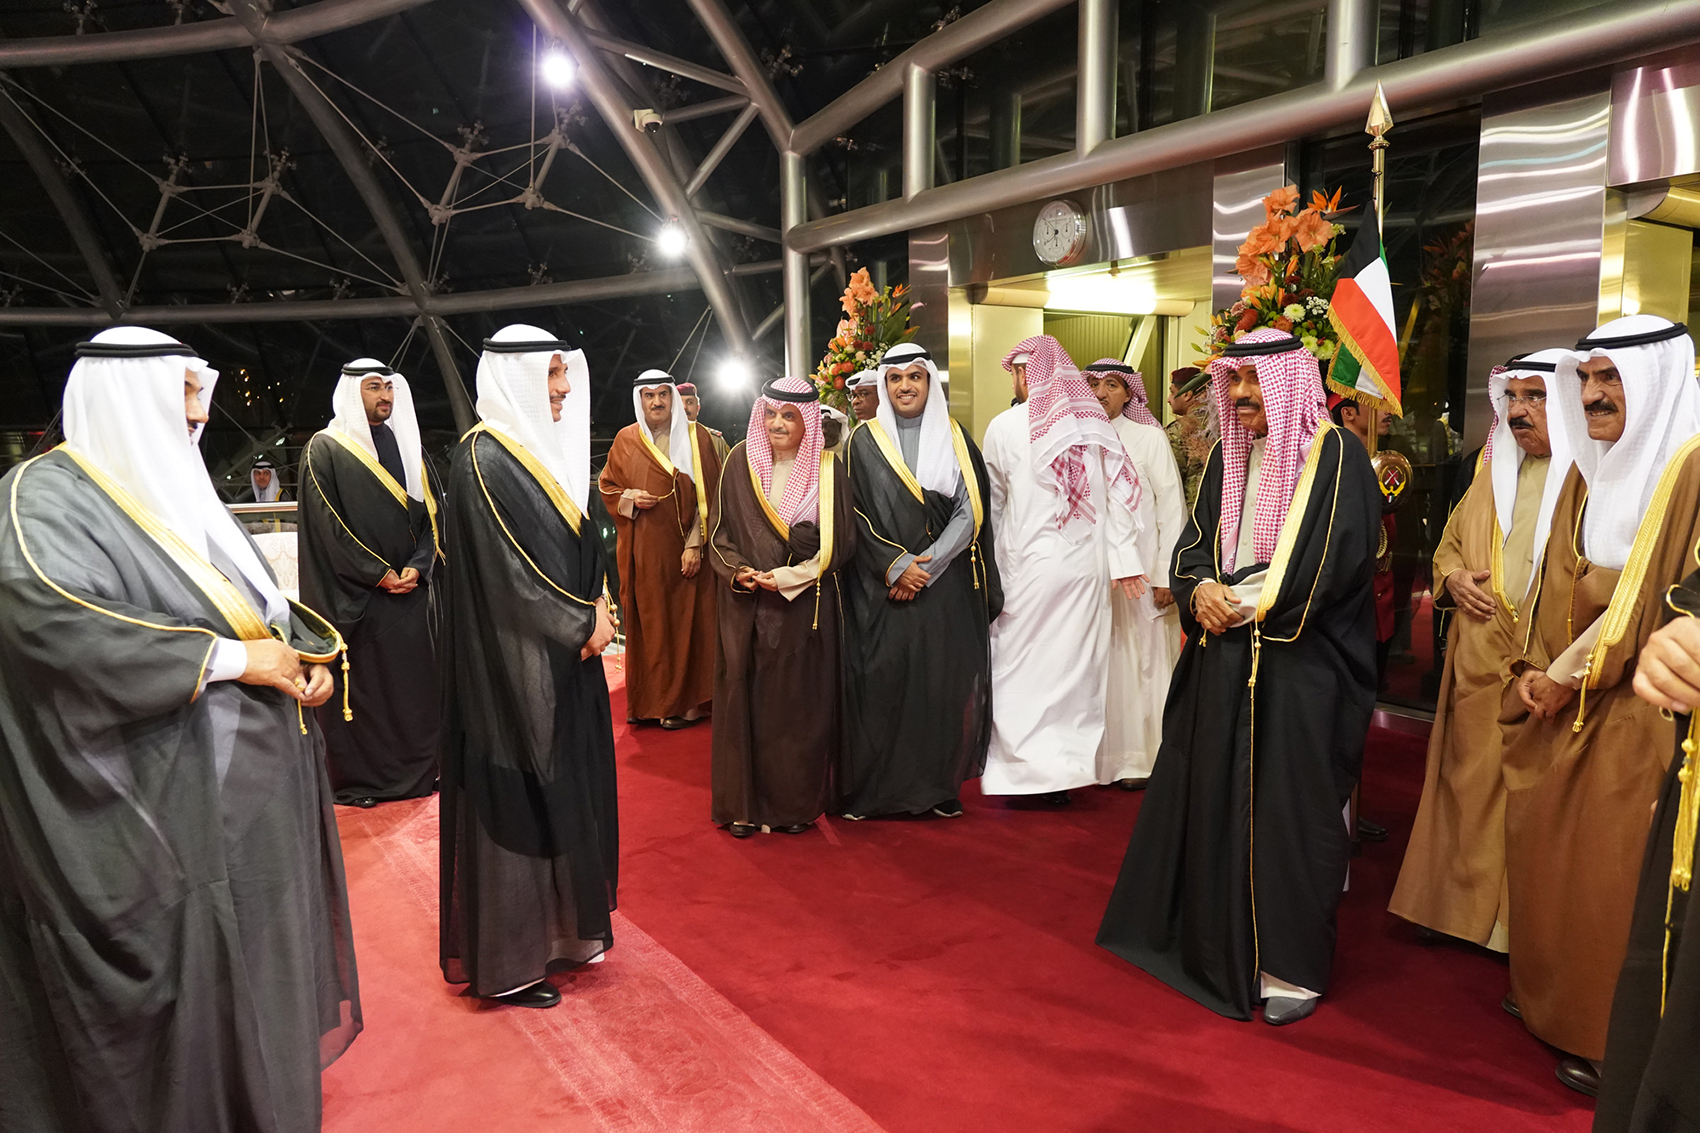 His Highness the Crown Prince Sheikh Nawaf Al-Ahmad Al-Jaber Al-Sabah returns home after attending King Abdulaziz Camel Race